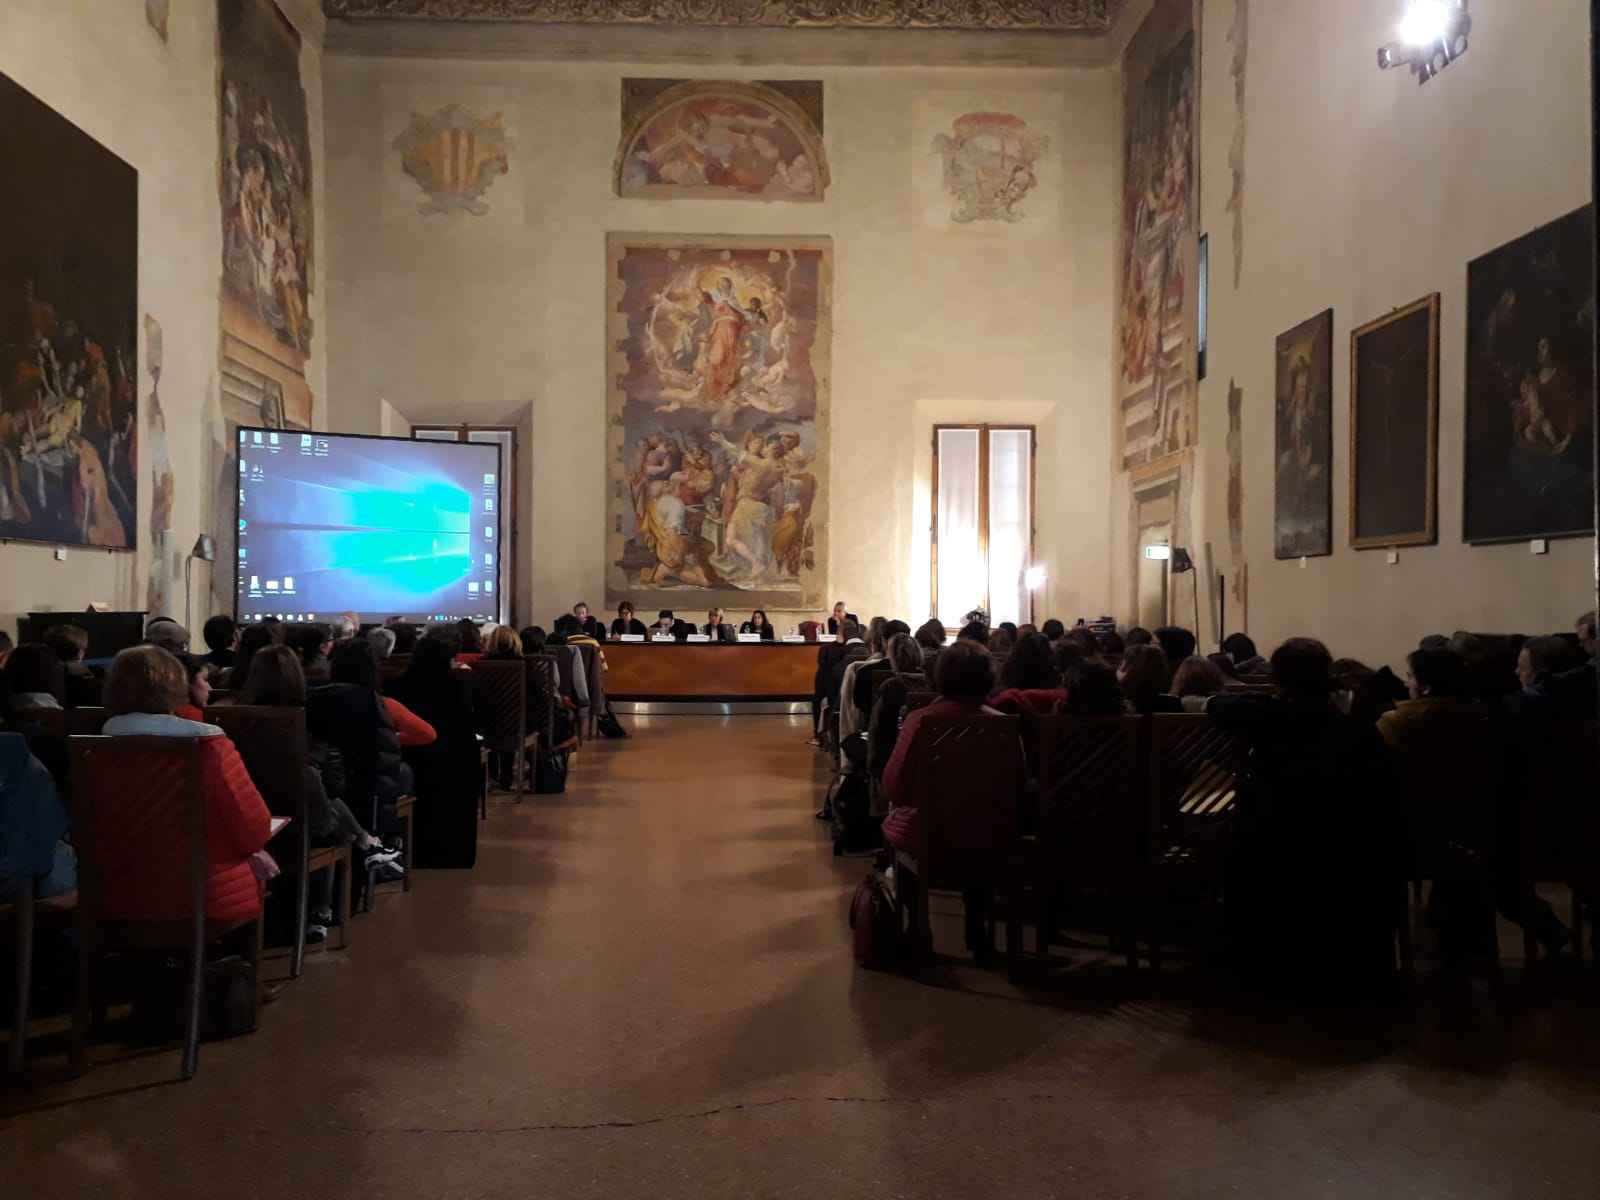 Palazzo d’accursio, Sala Farnese, evento sul contrasto alla grave emarginazione e il sostegno ai migranti